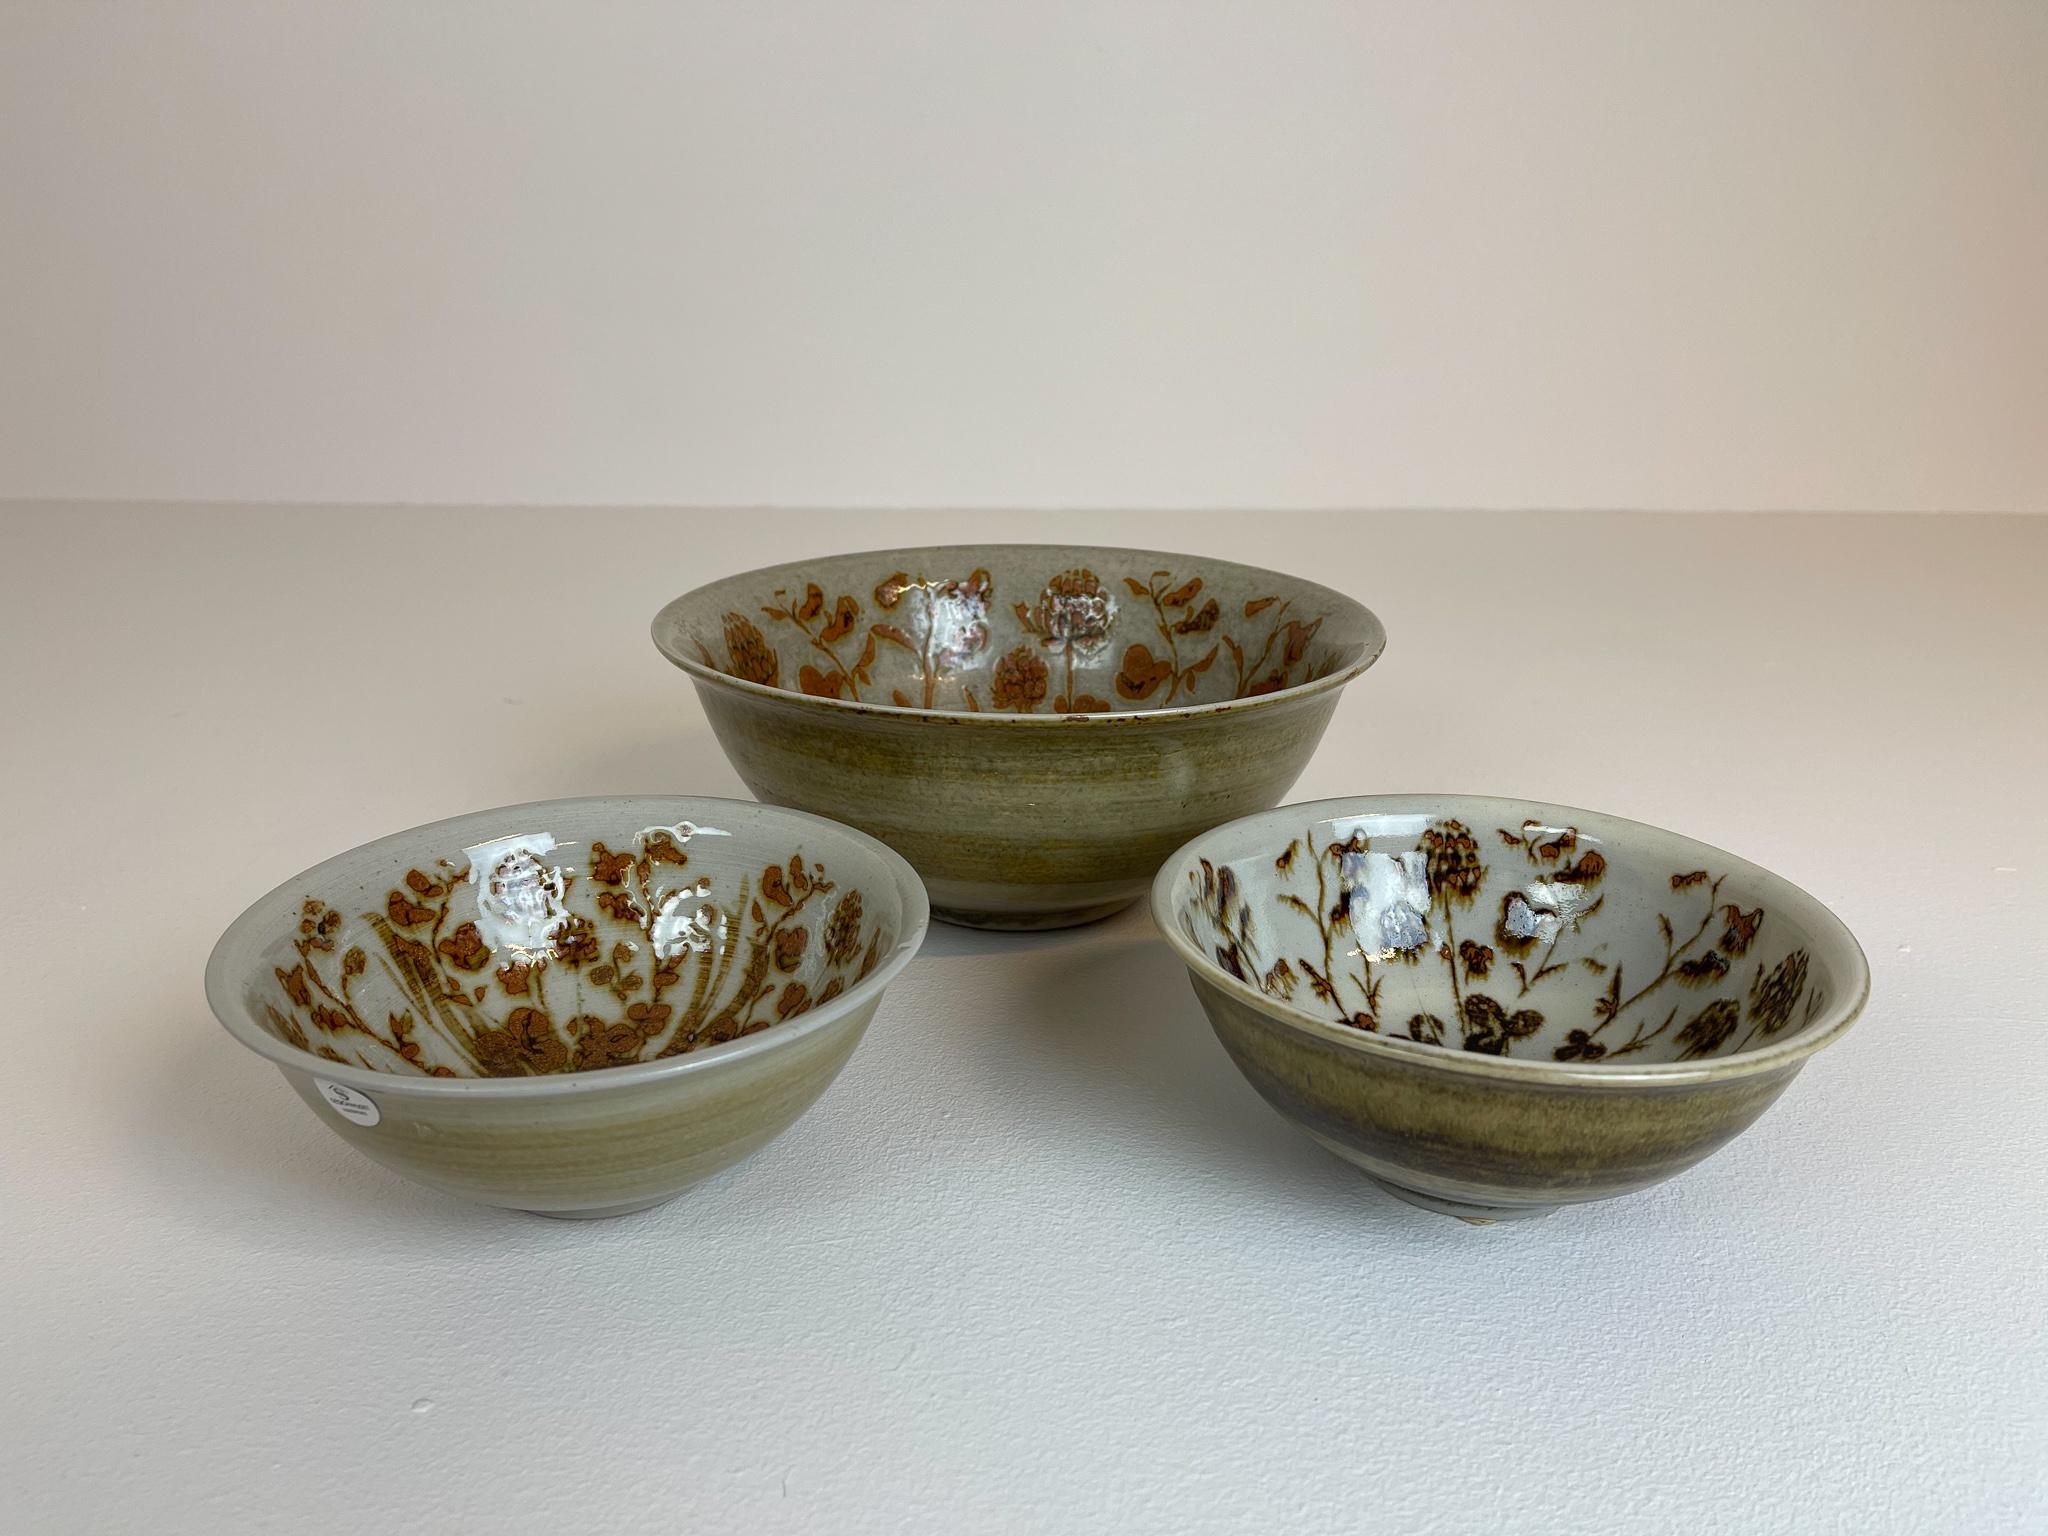 Scandinavian Modern Ceramic Bowls by Carl-Harry Stålhane Design Huset, Sweden In Good Condition For Sale In Hillringsberg, SE